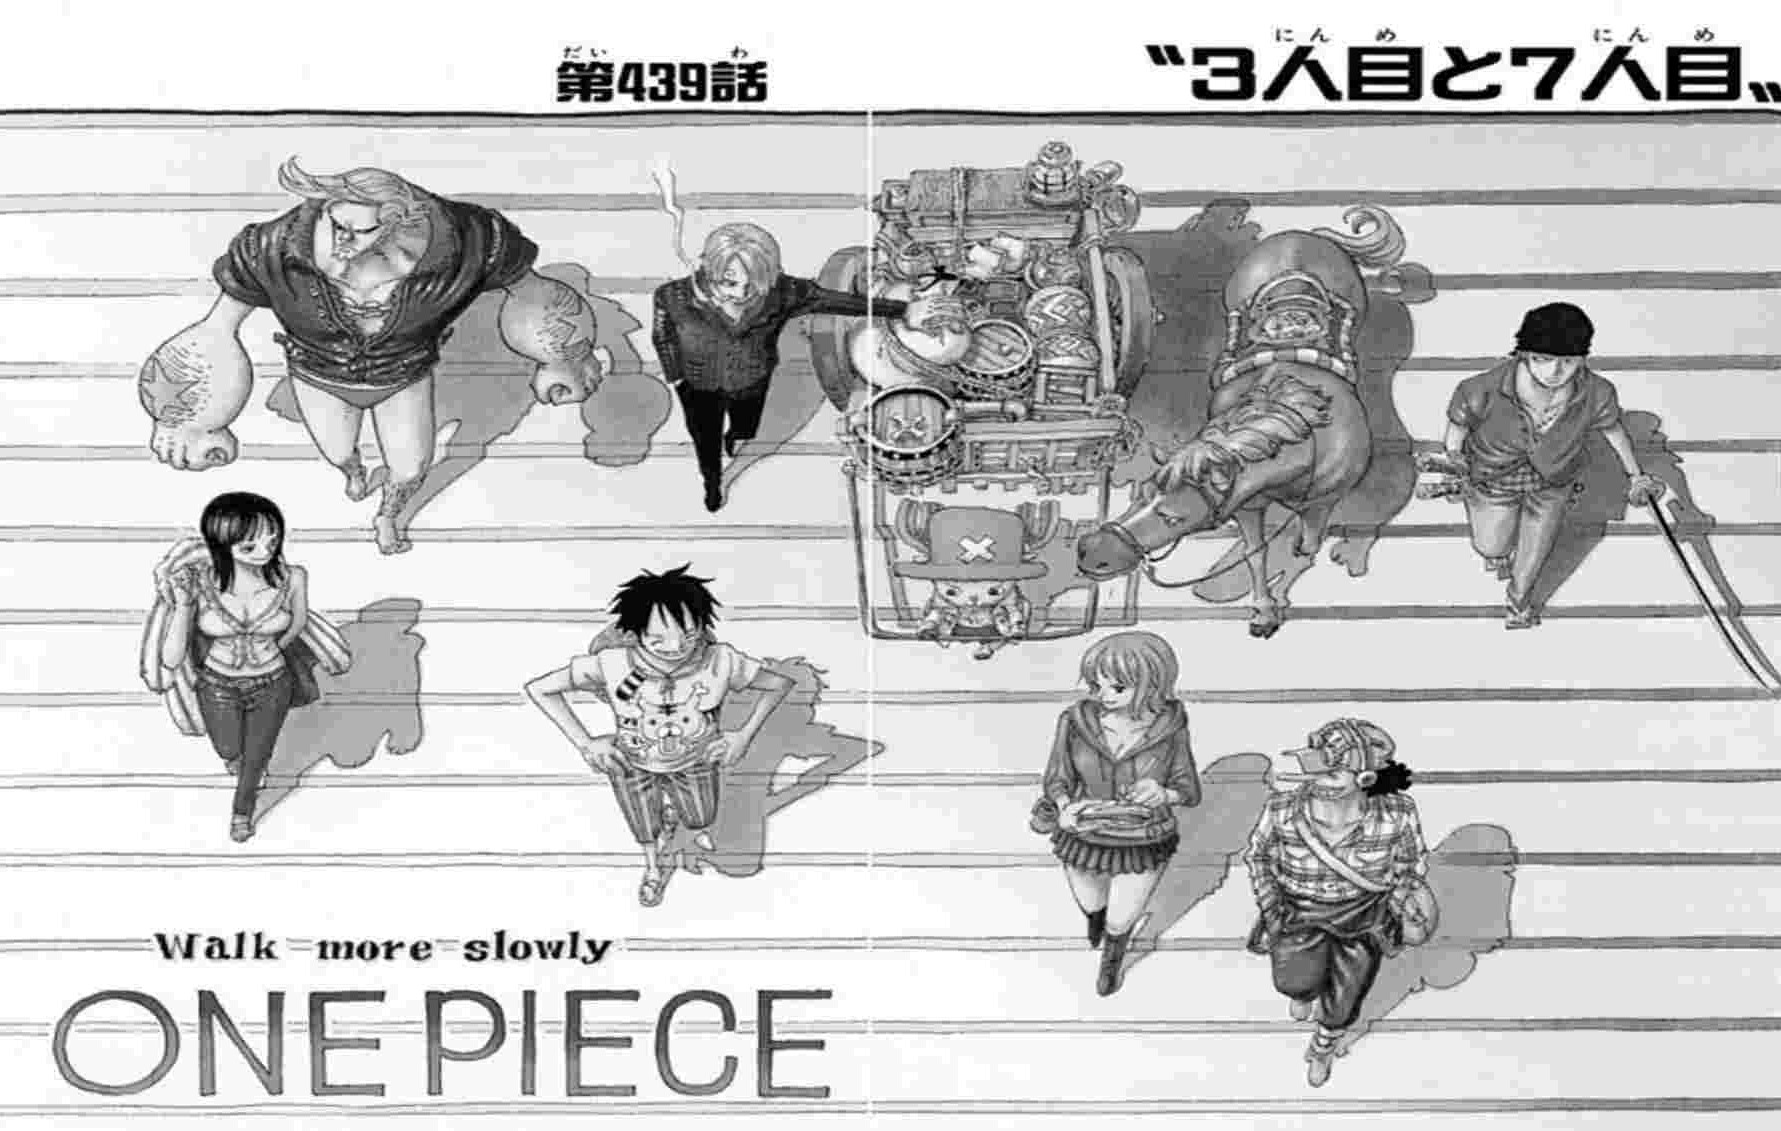 ワンピース 麦わらの一味の仲間になりそうなキャラクターは誰 One Piece伏線考察 Renote リノート